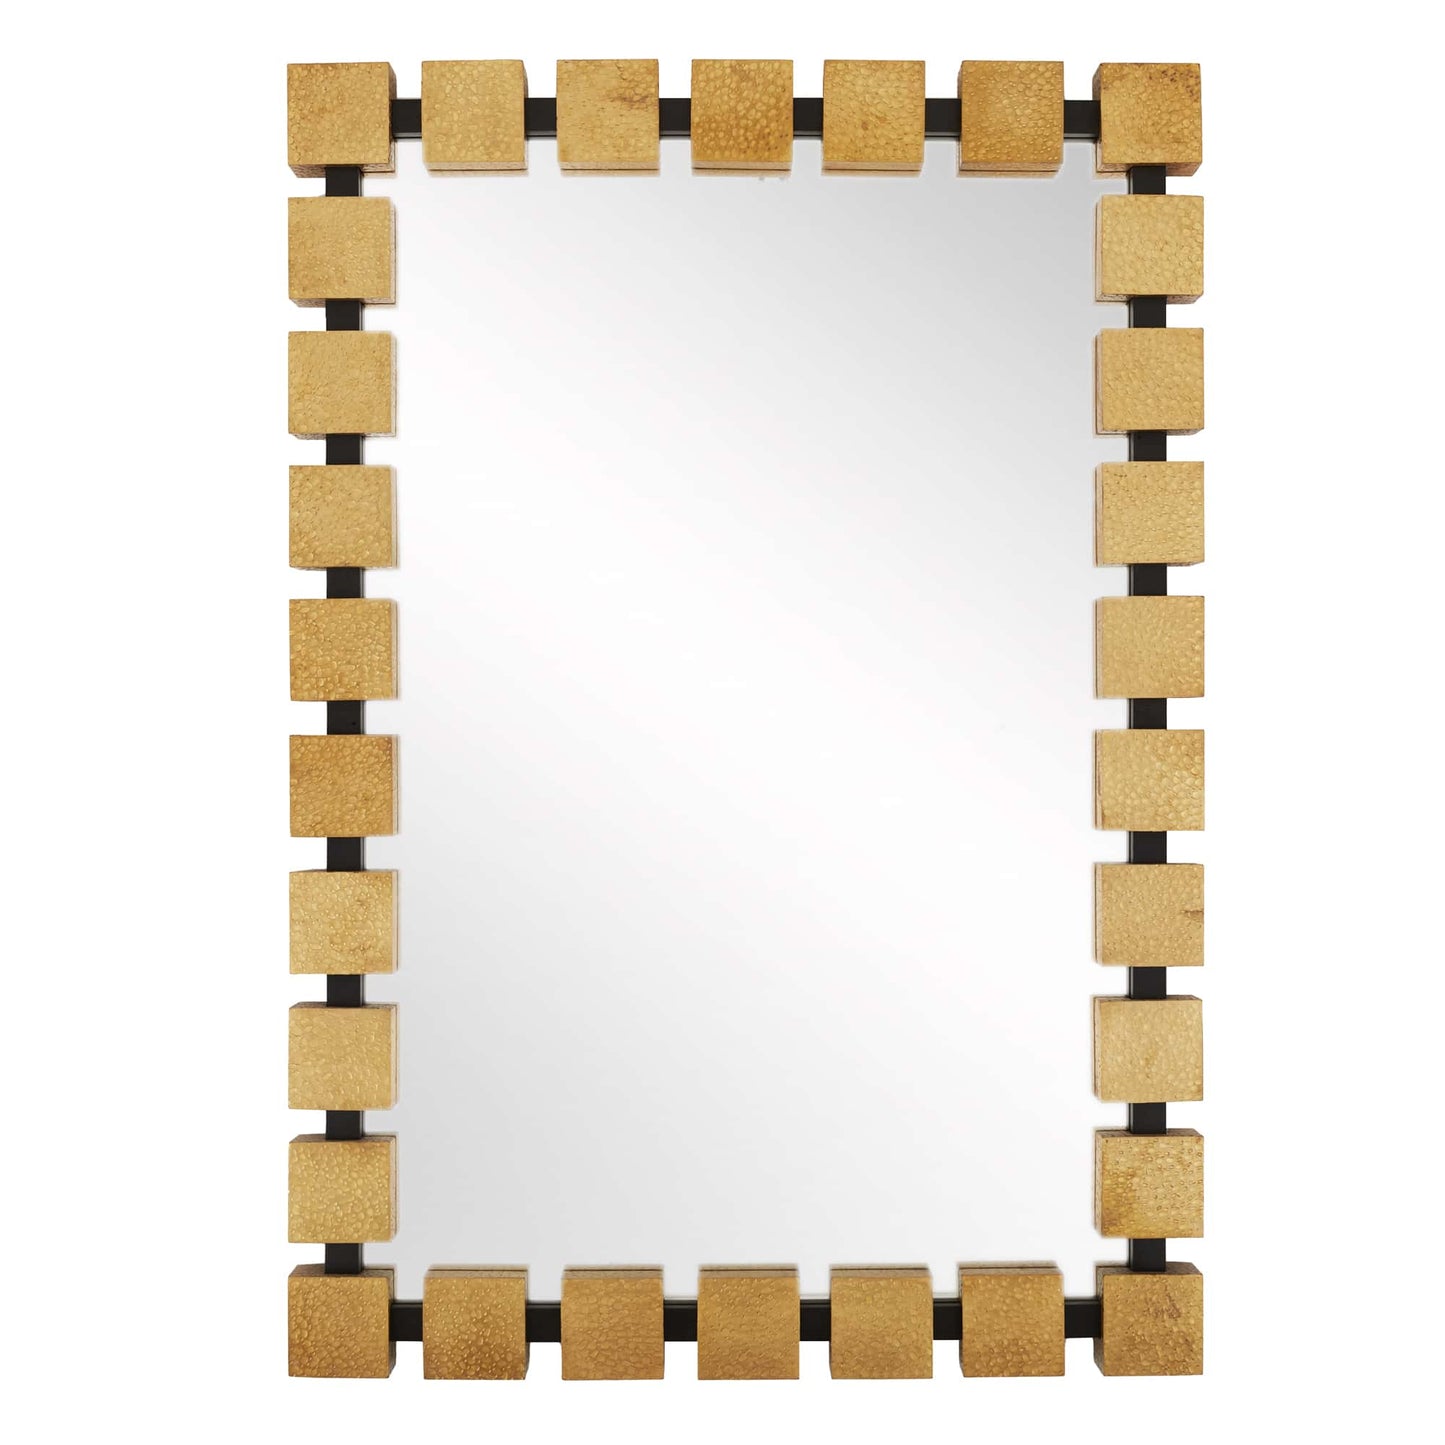 Ruzgar Mirror - Contemporary Design with Unique Frame